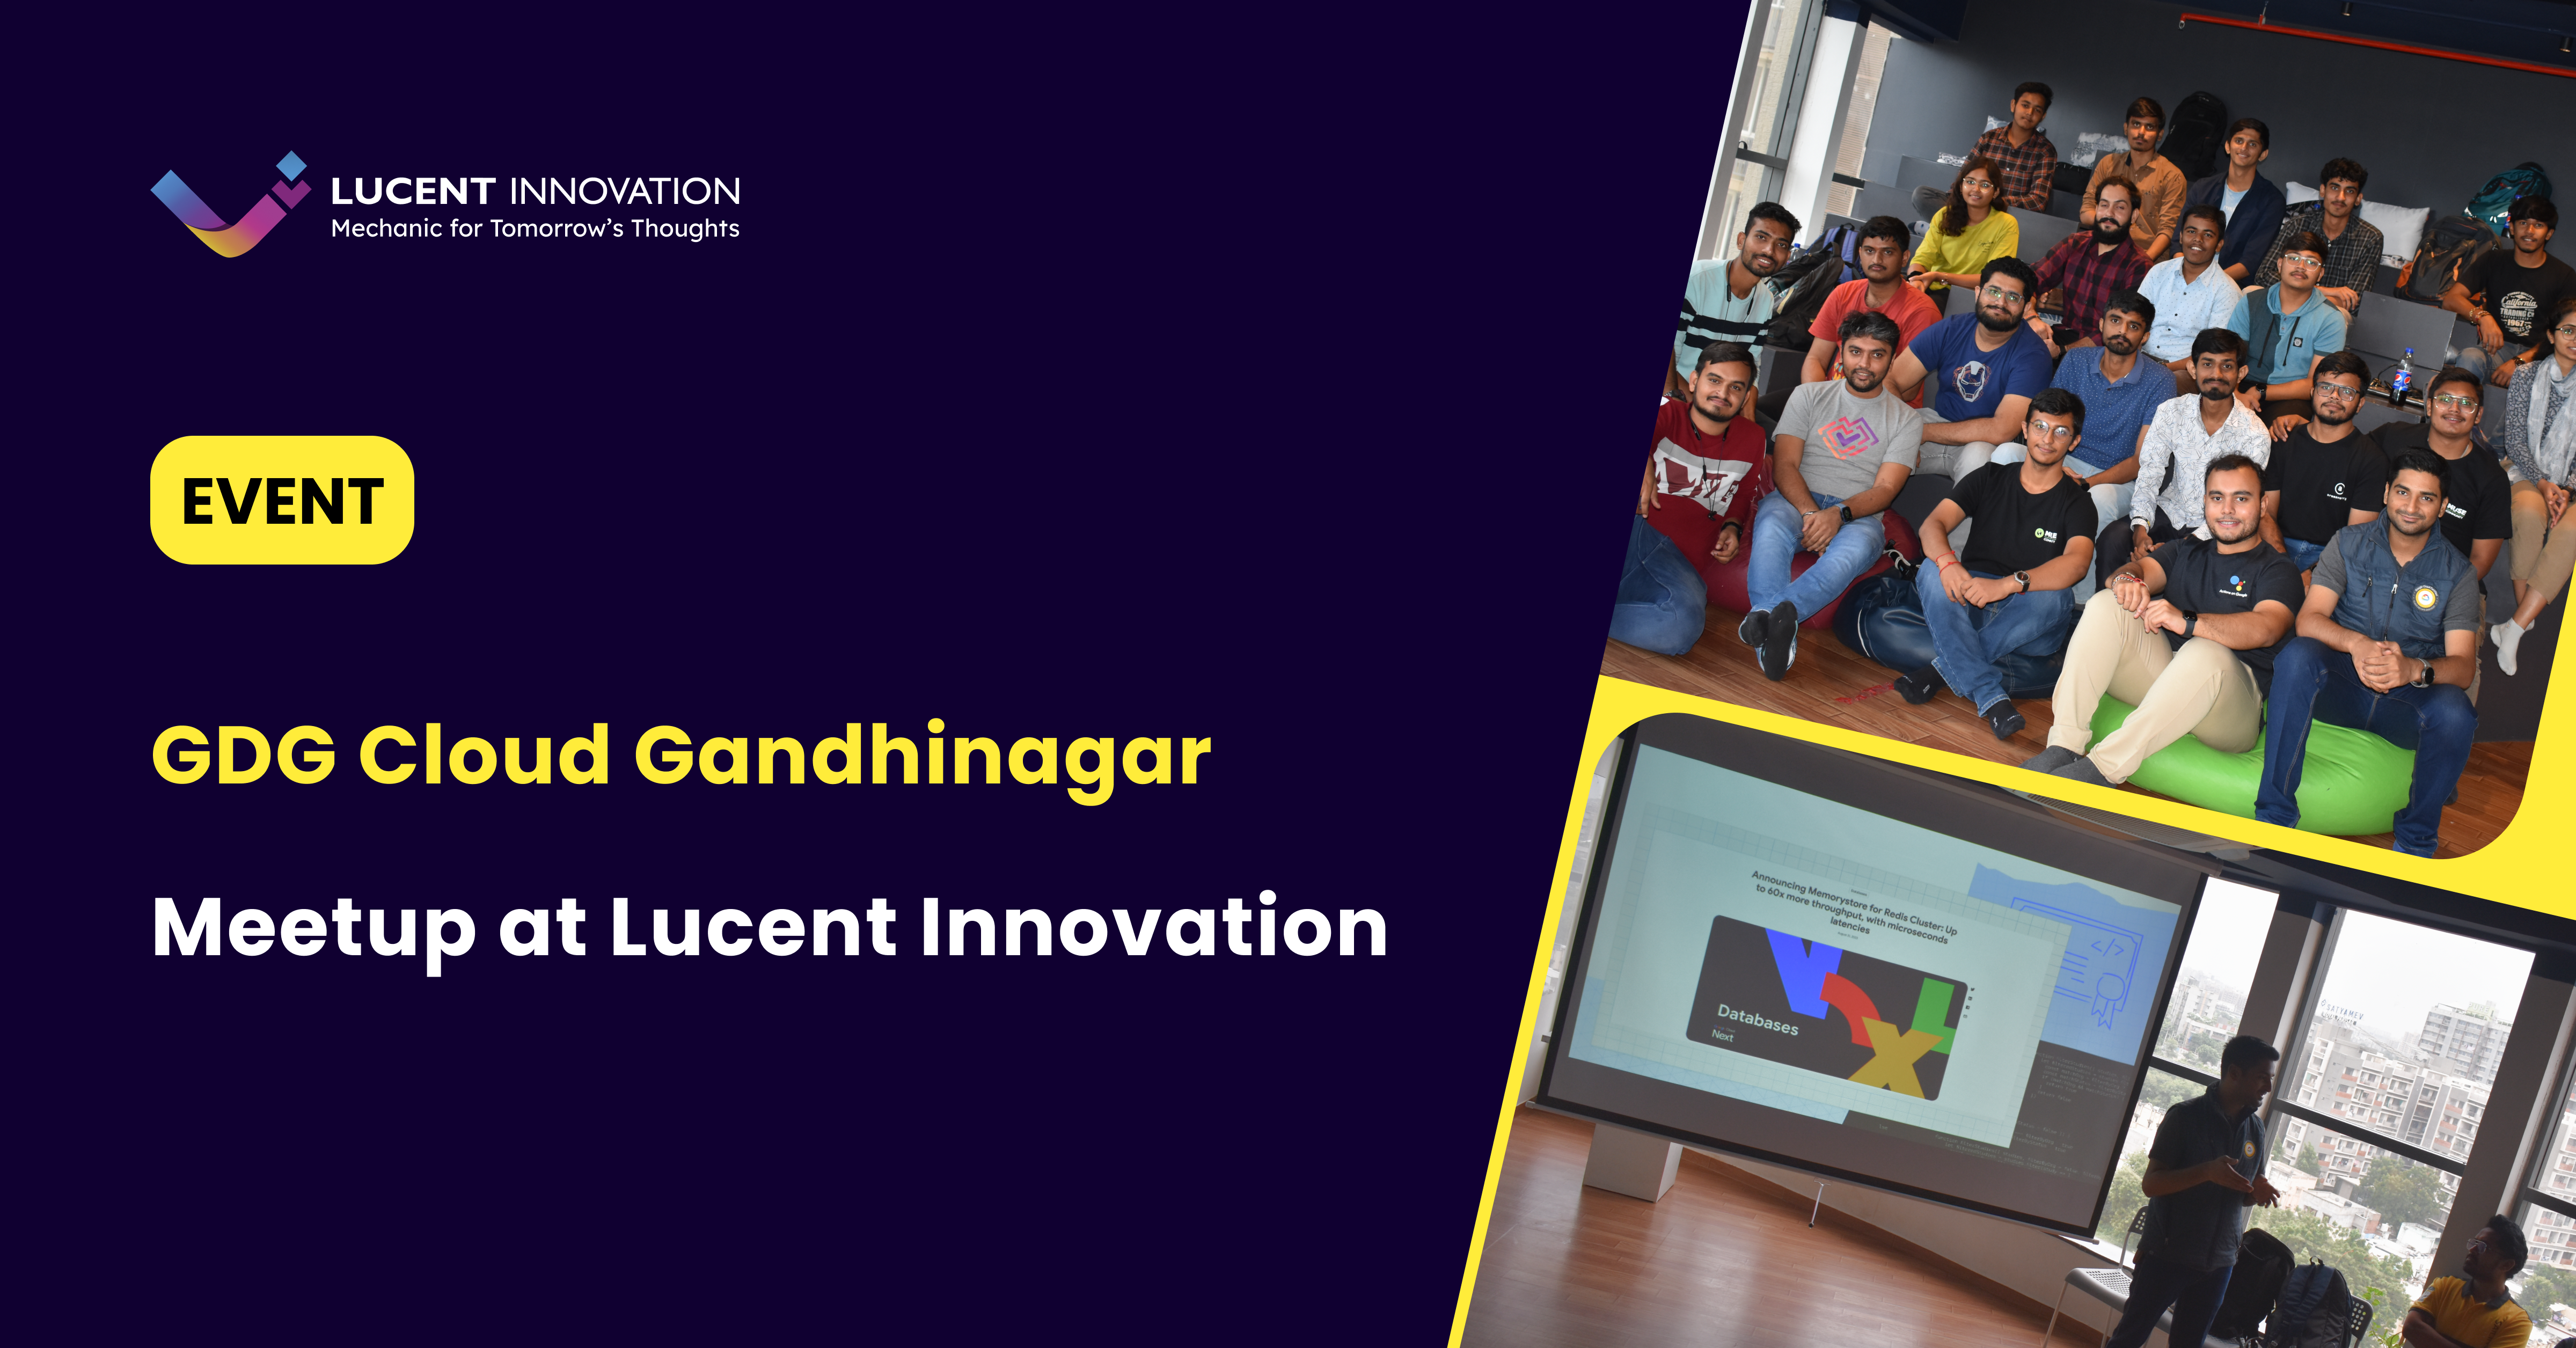 Lucent Innovation Google Cloud Gandhinagar Meetup: Insights from the Tech Talk